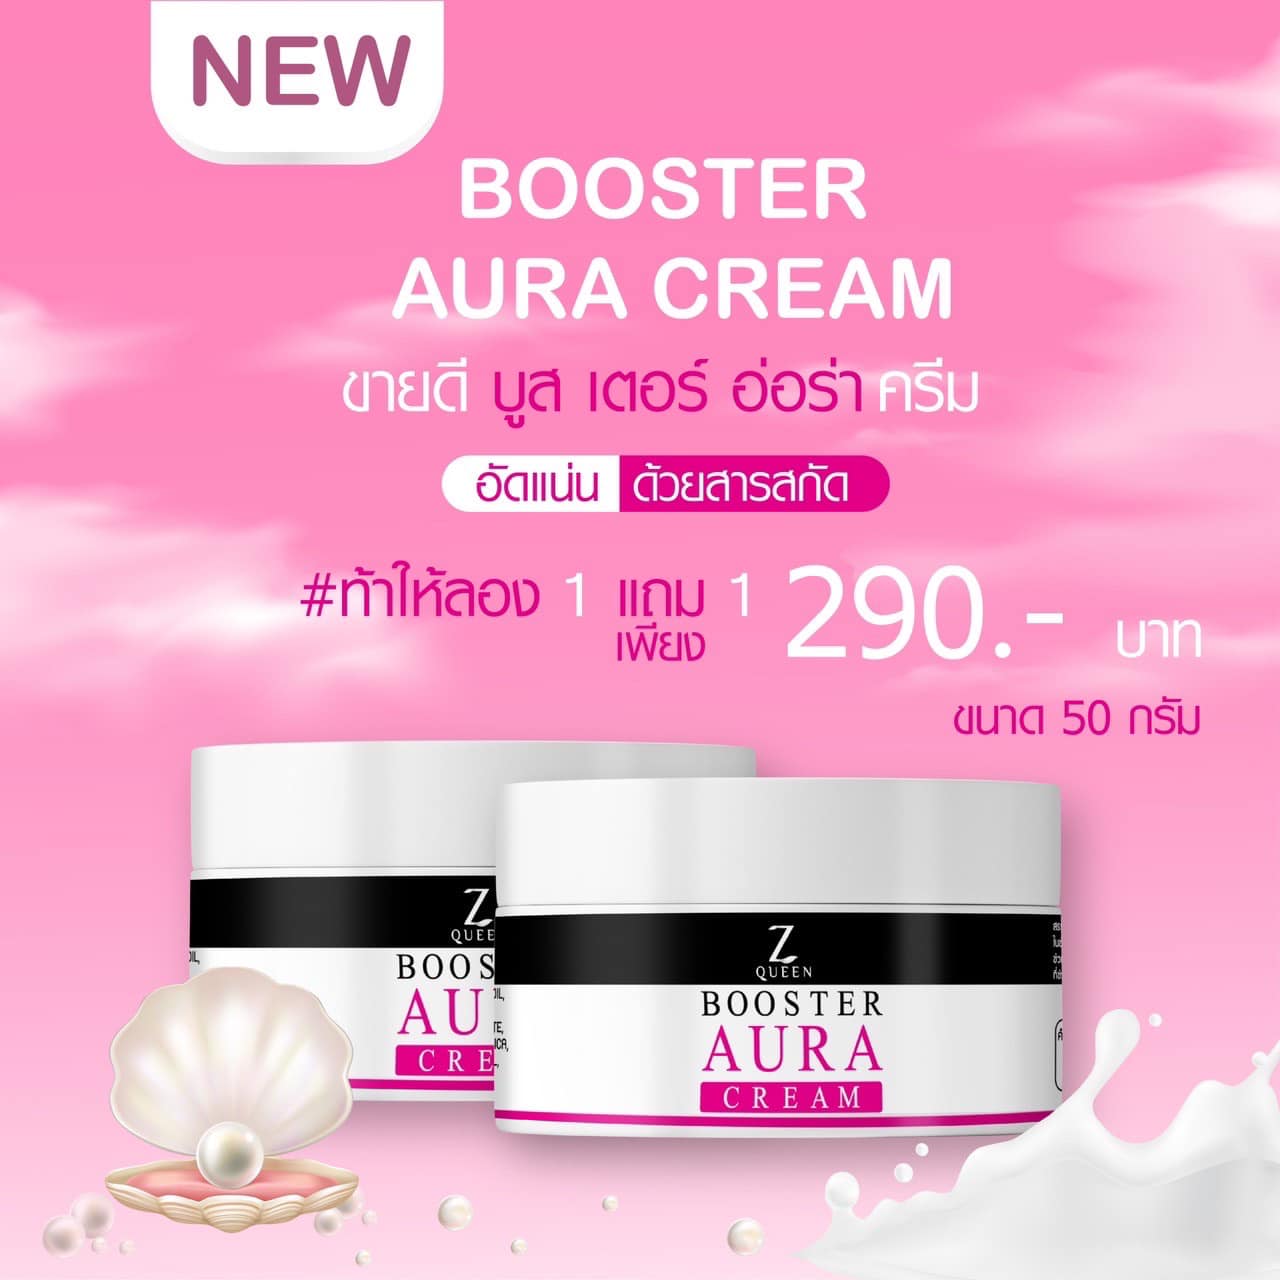 รูปภาพที่1 ของสินค้า : Booster Aura Cream  ( 1 แถม 1 )  บูสเตอร์ออร่าครีม Z Queen ของแท้ 100% ผิวแพ้ง่าย ห้ามใช้ คนท้องห้ามใช้ บูสเตอร์ ออร่า ครีม 50g